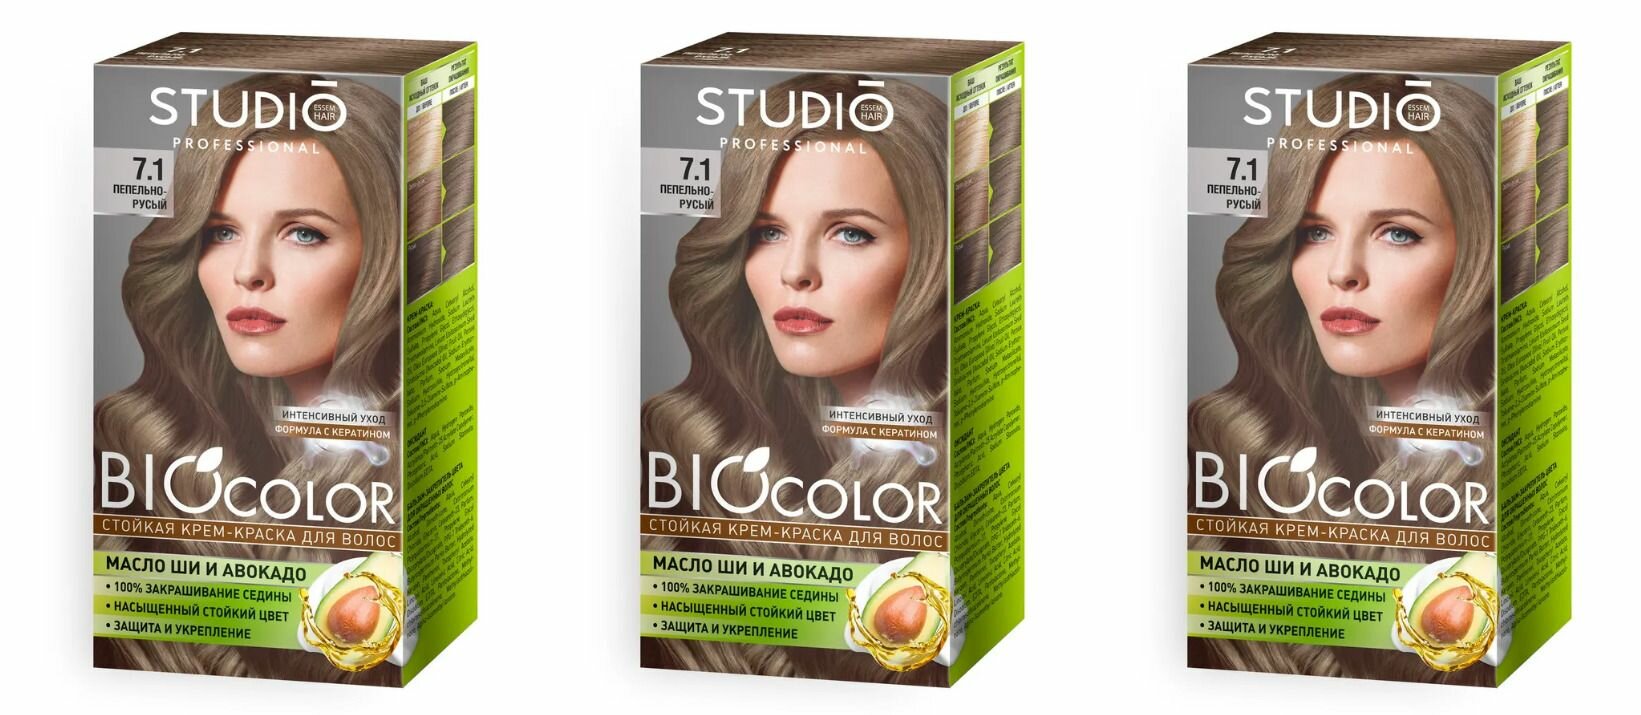 Studio Professional Essem Hair Крем-краска для волос Biocolor 7.1 Пепельно-русый, 115 мл, 3 шт